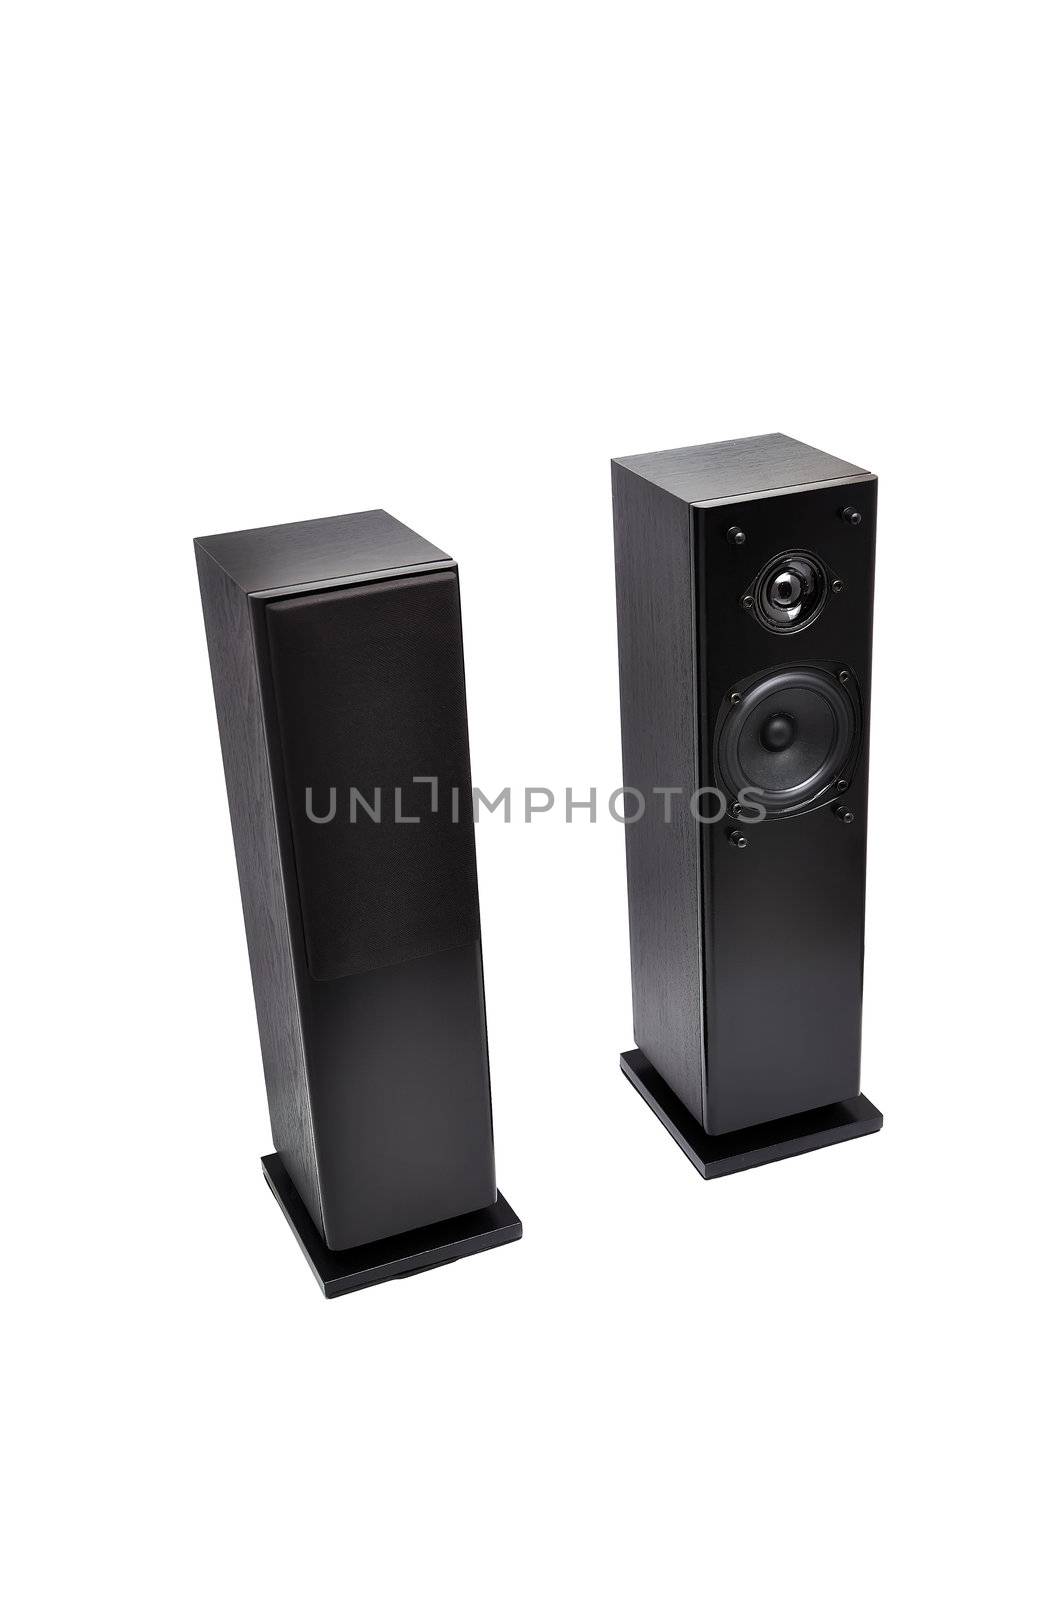 black audio speakers by vetkit